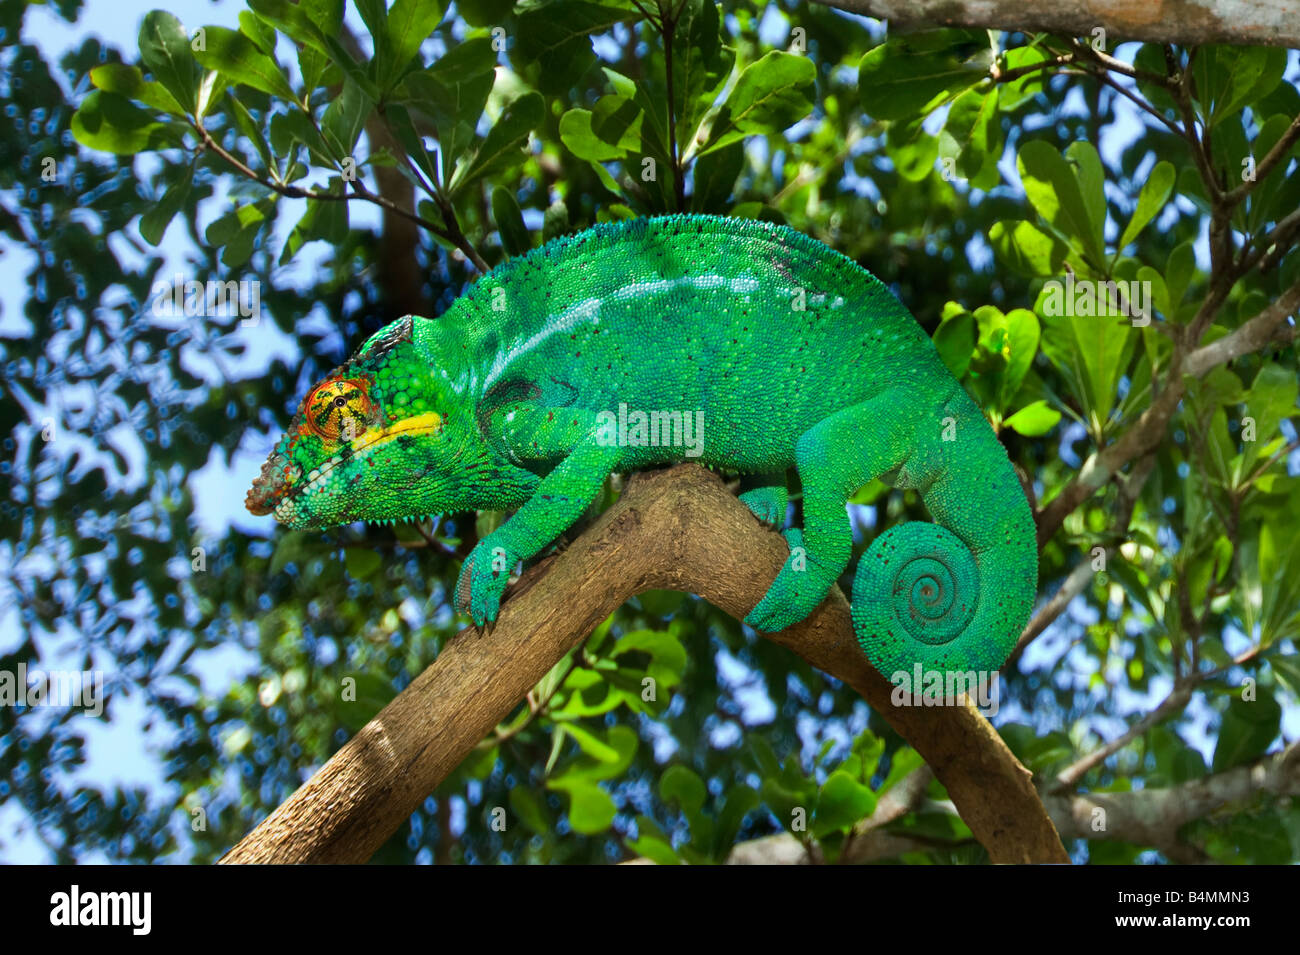 1 eine einzelnes grüne wilde Madagaskar (FURCIFER pardalis) männlichen Chamäleon auf Natur natürliches Grün Blätter Blatt Hintergrund hell Brilla Stockfoto